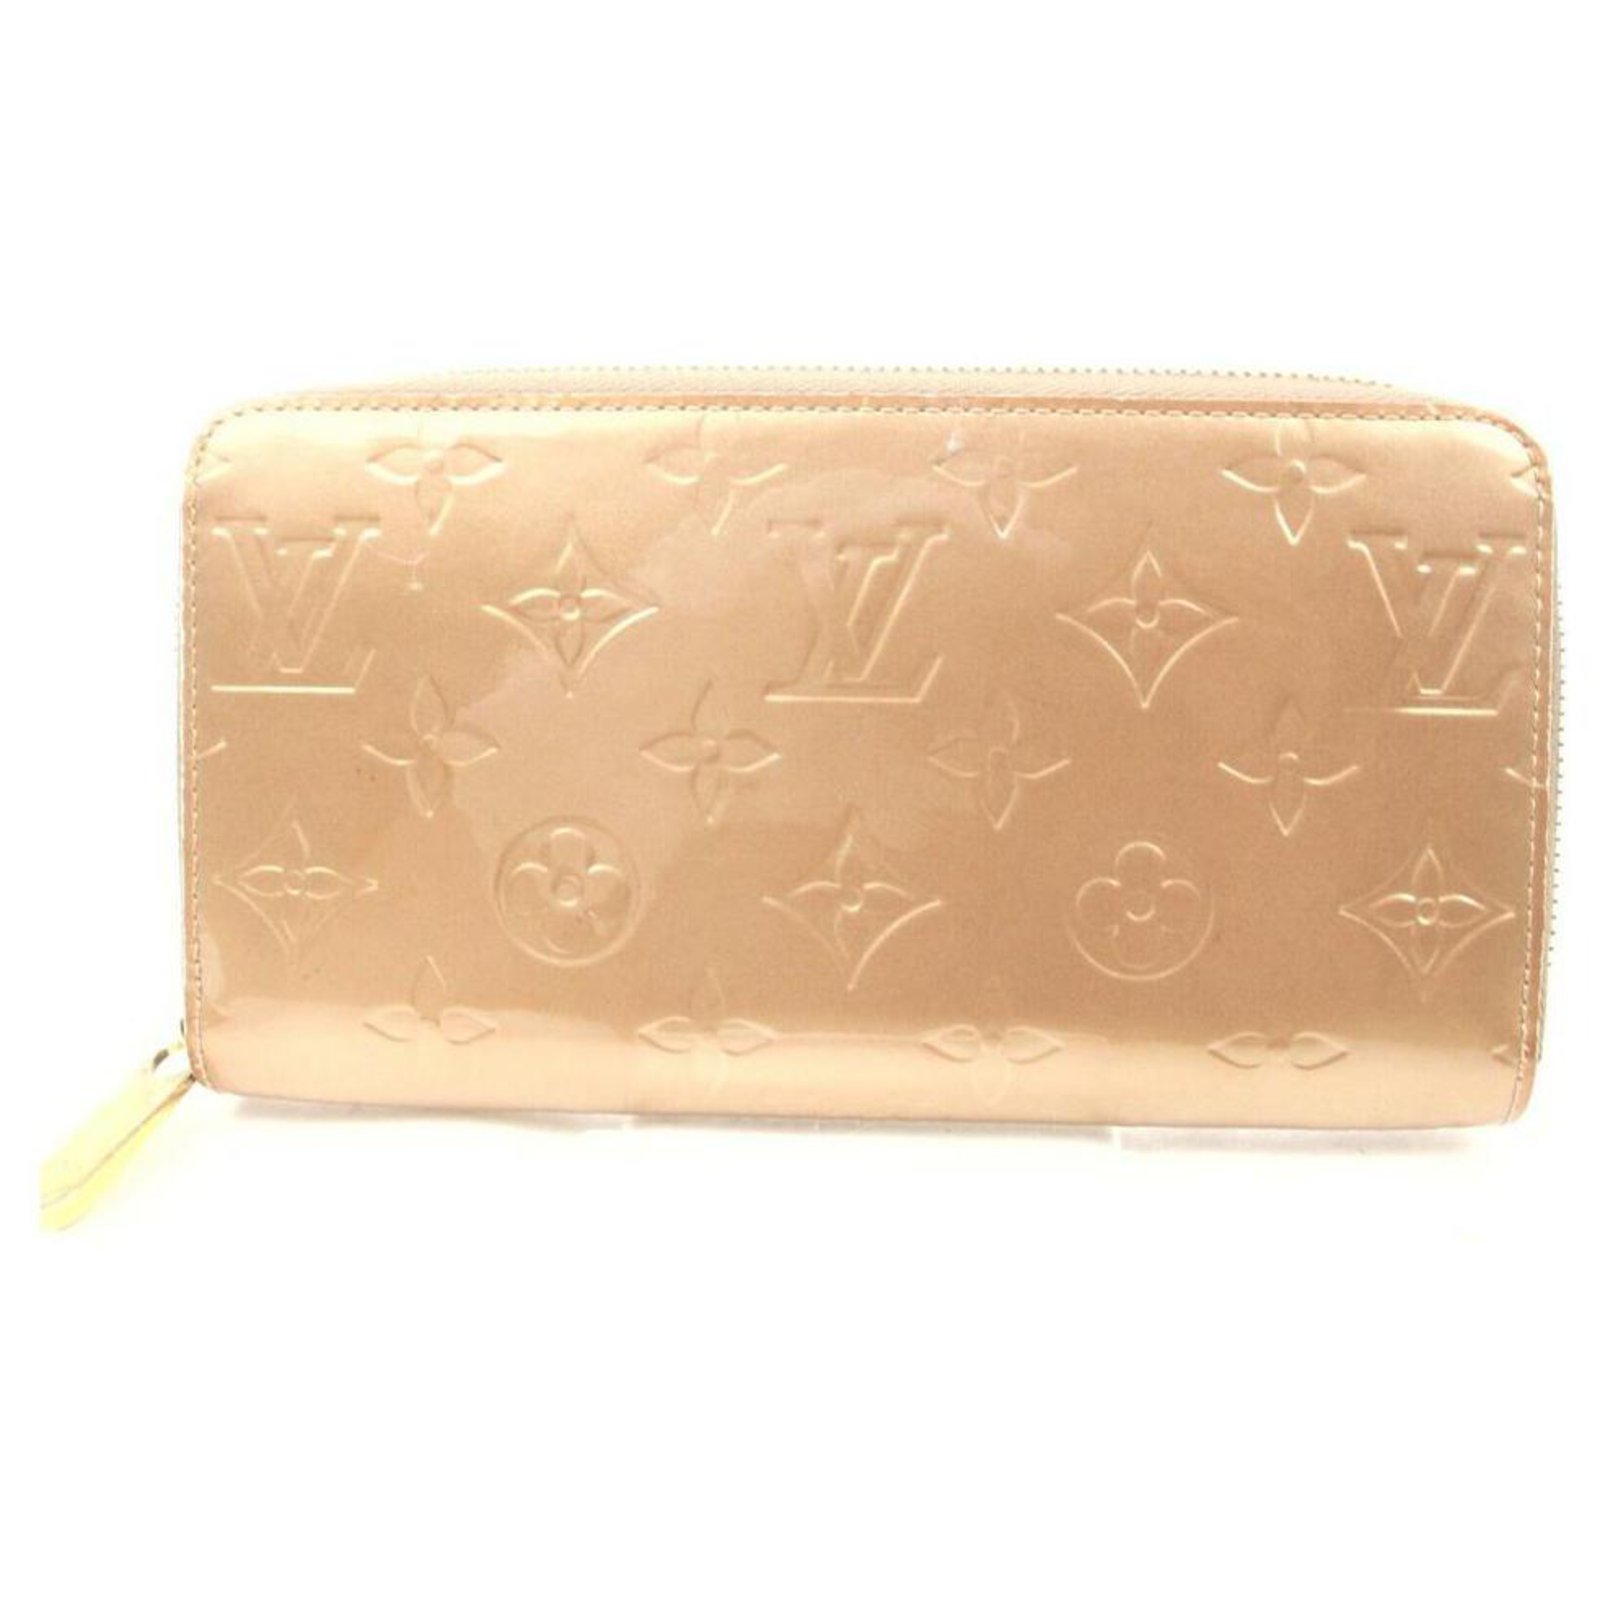 Louis Vuitton Gold-Beige Monogram Vernis Long Zippy Wallet Zip